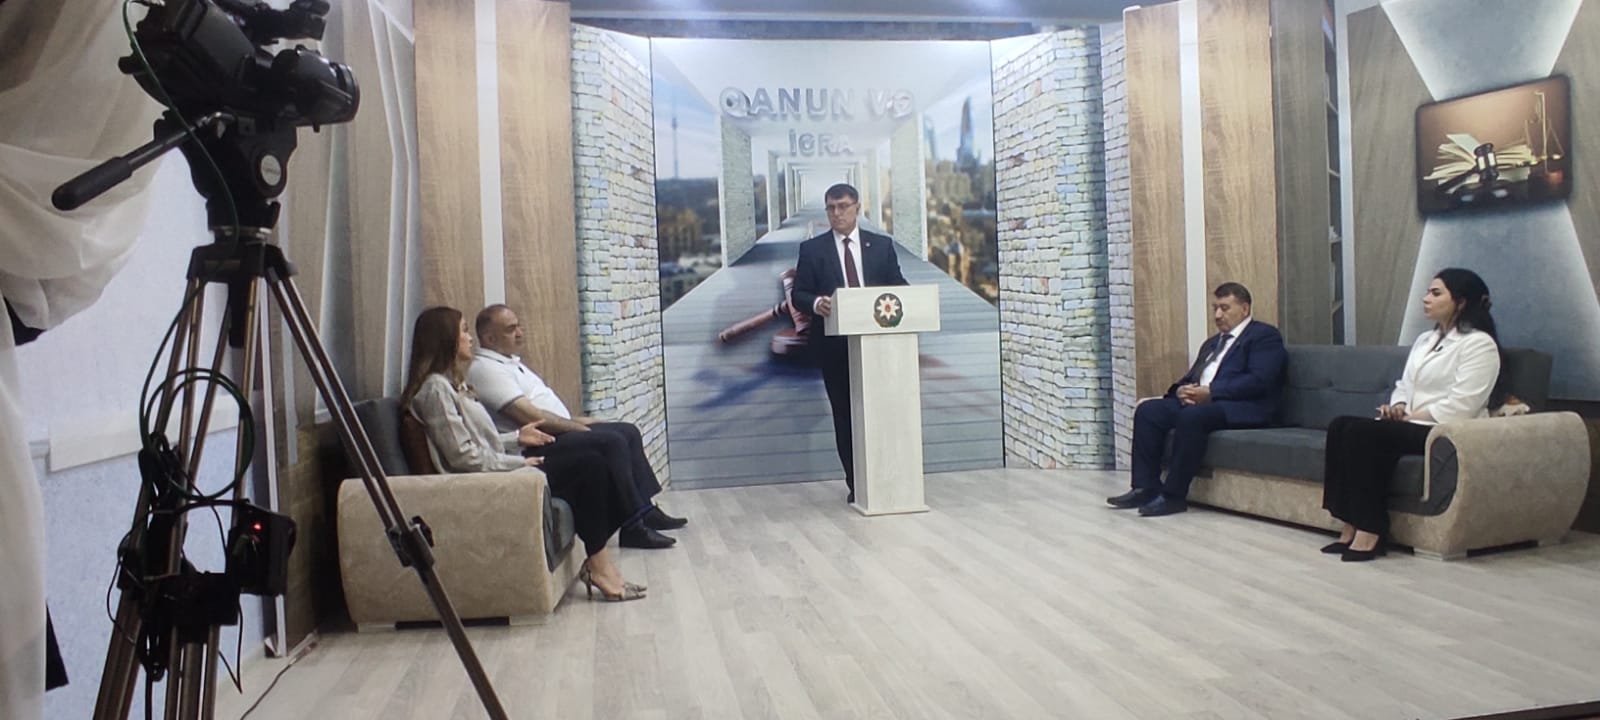 "Qanun və İcra” proqramı tanınmış hüquqşünas Əkbər Yusifoğlunun təqdimatında - FOTO\VİDEO